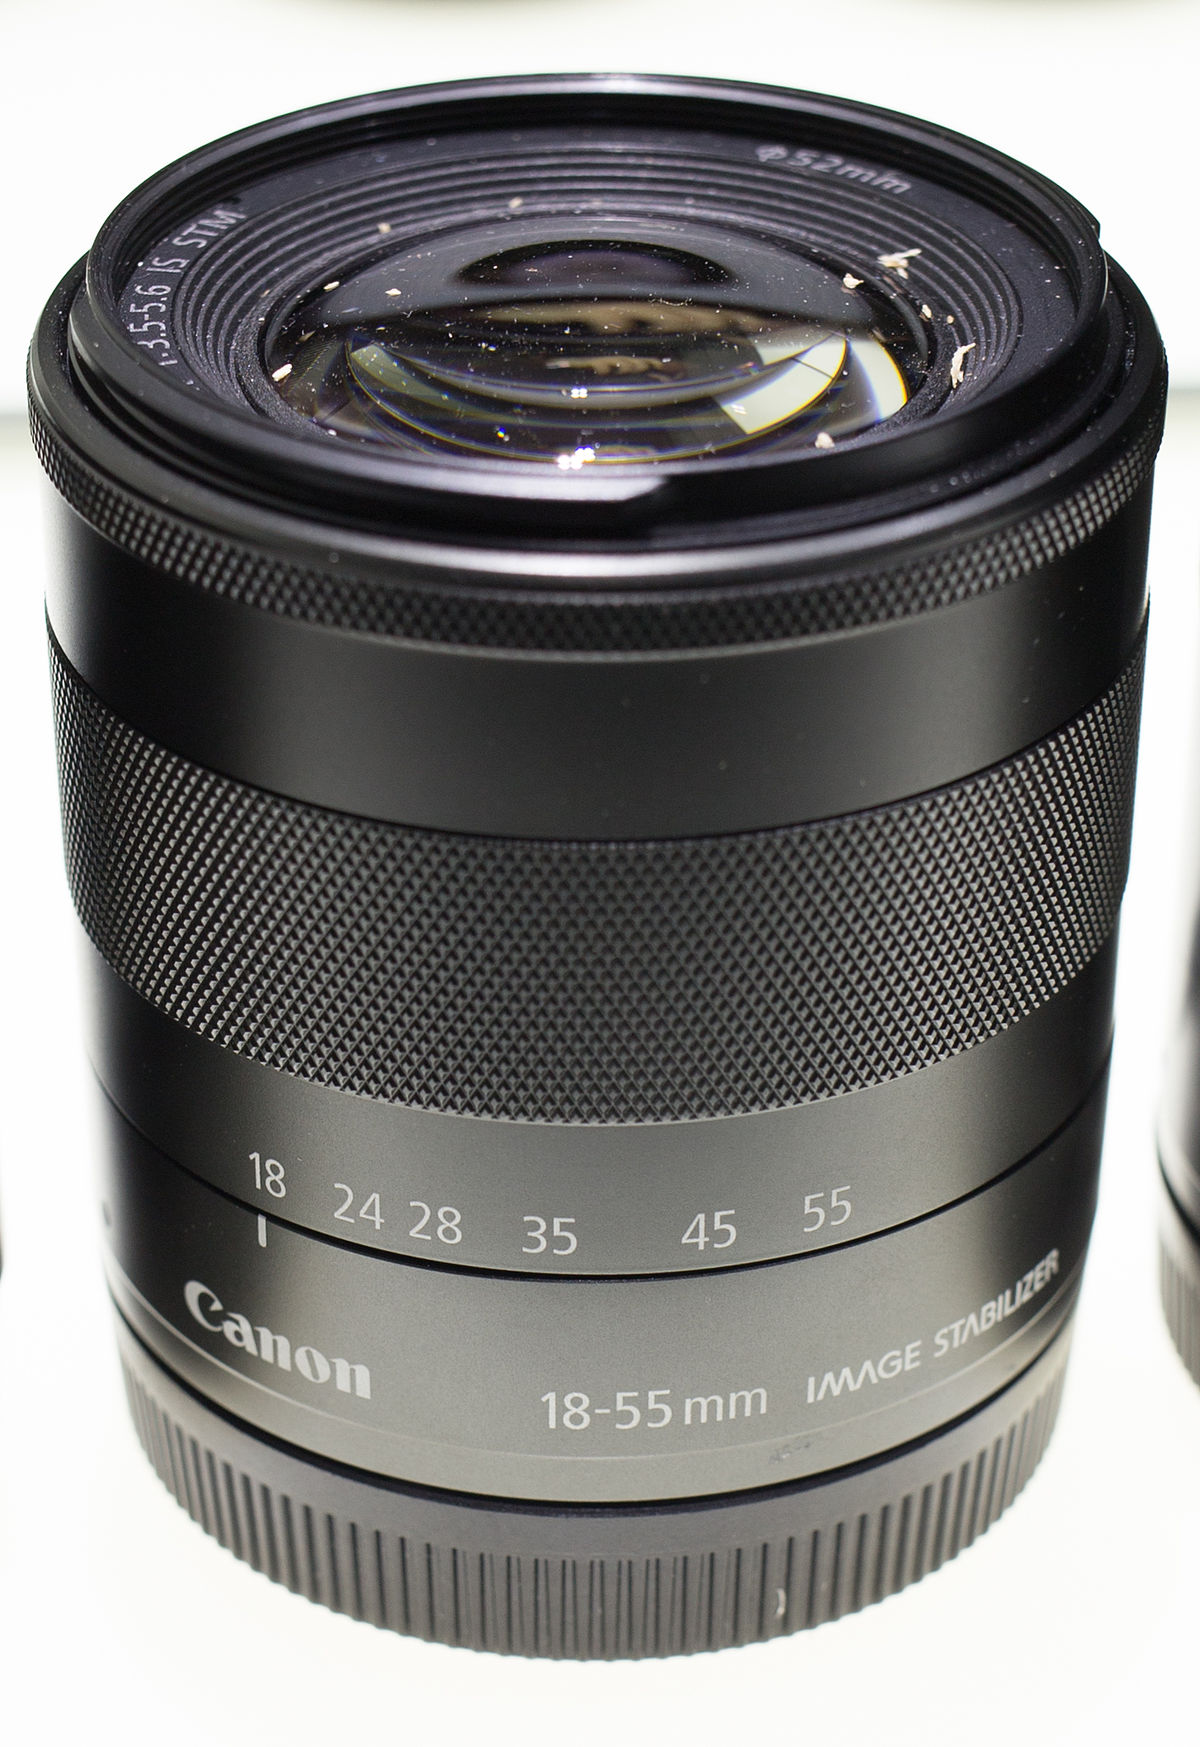 ファイル:Canon EF-M f3.5-5.6 18-55mm.jpg - Wikipedia